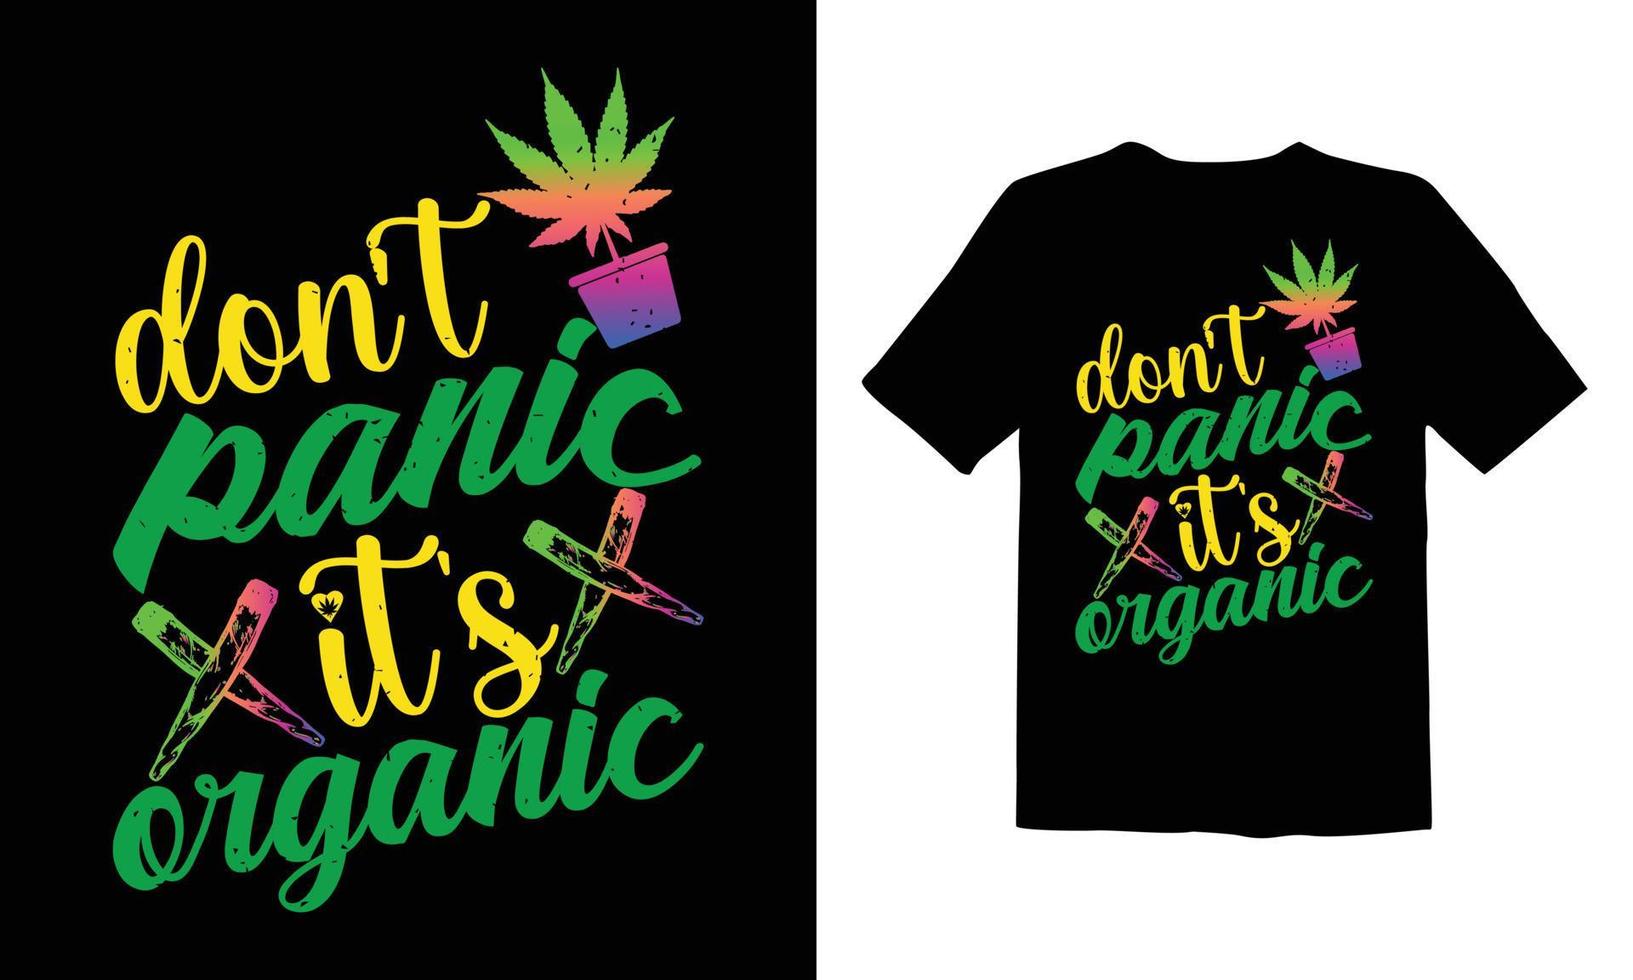 erva daninha, design de camiseta de cannabis vetor